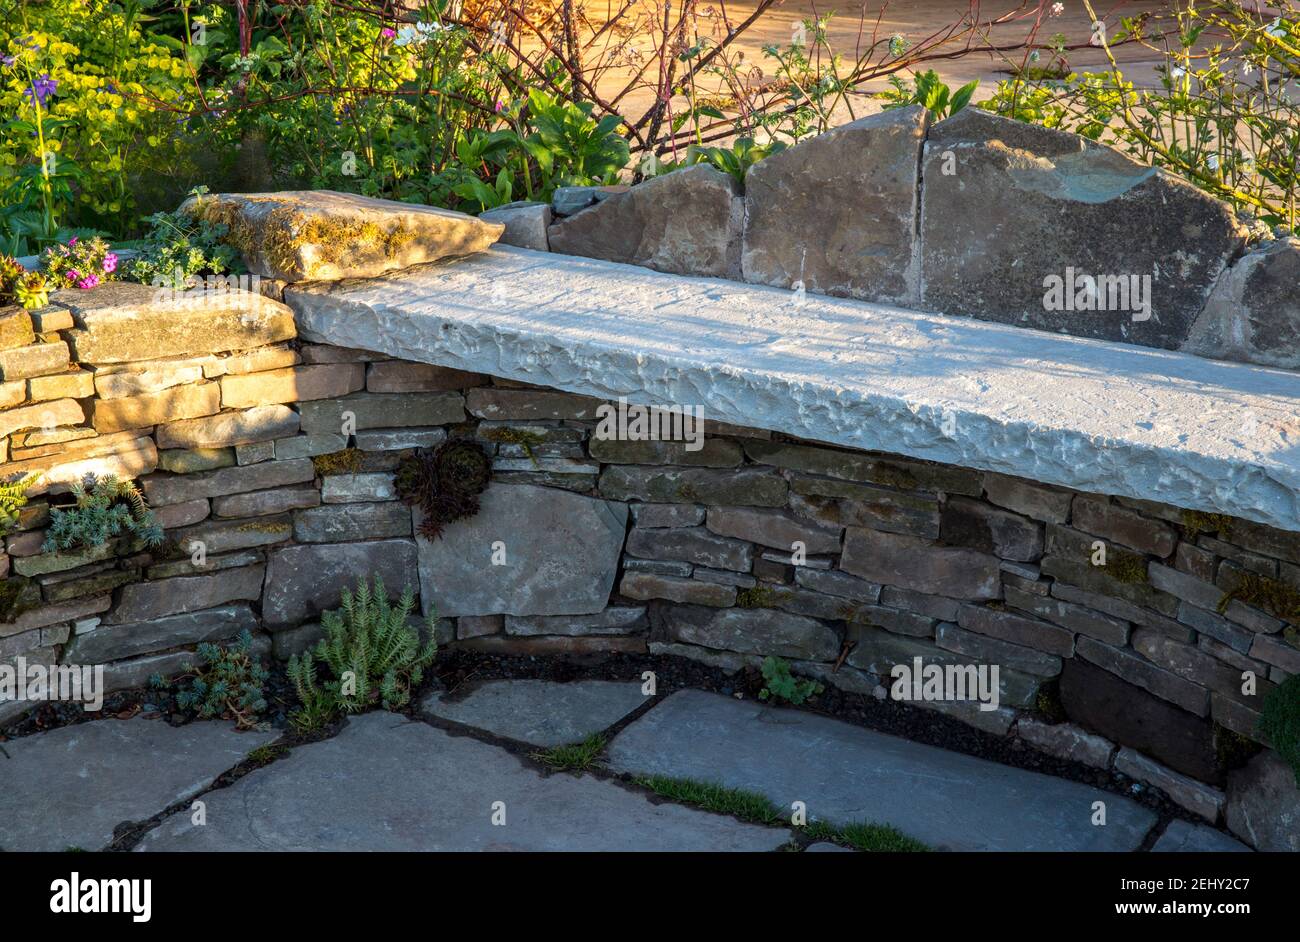 Giardino all'inglese di campagna con un muro di pietra a secco con succulenti E sempervivum piante e un giardino rustico di pietra panca Inghilterra GB Foto Stock